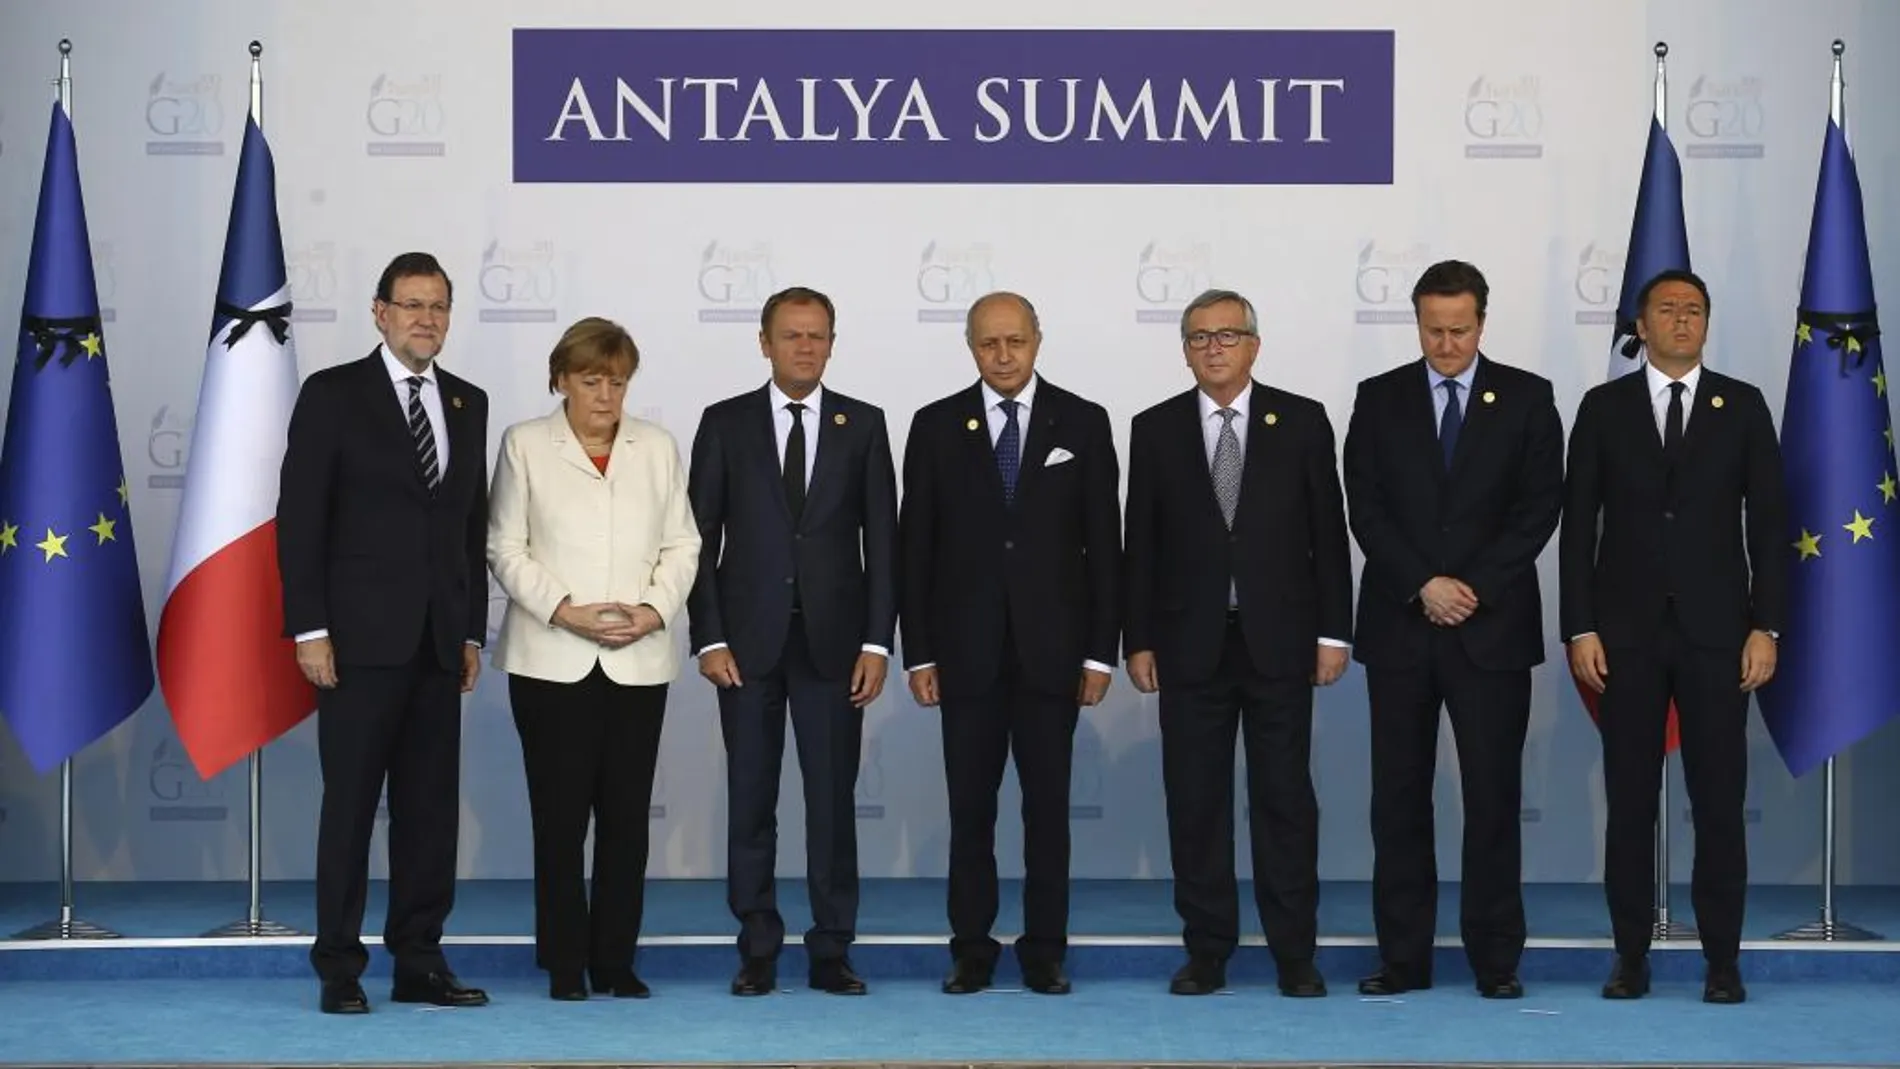 Los líderes del G20 guardan un minuto de silencio para honrar a las víctimas de los atentados de París